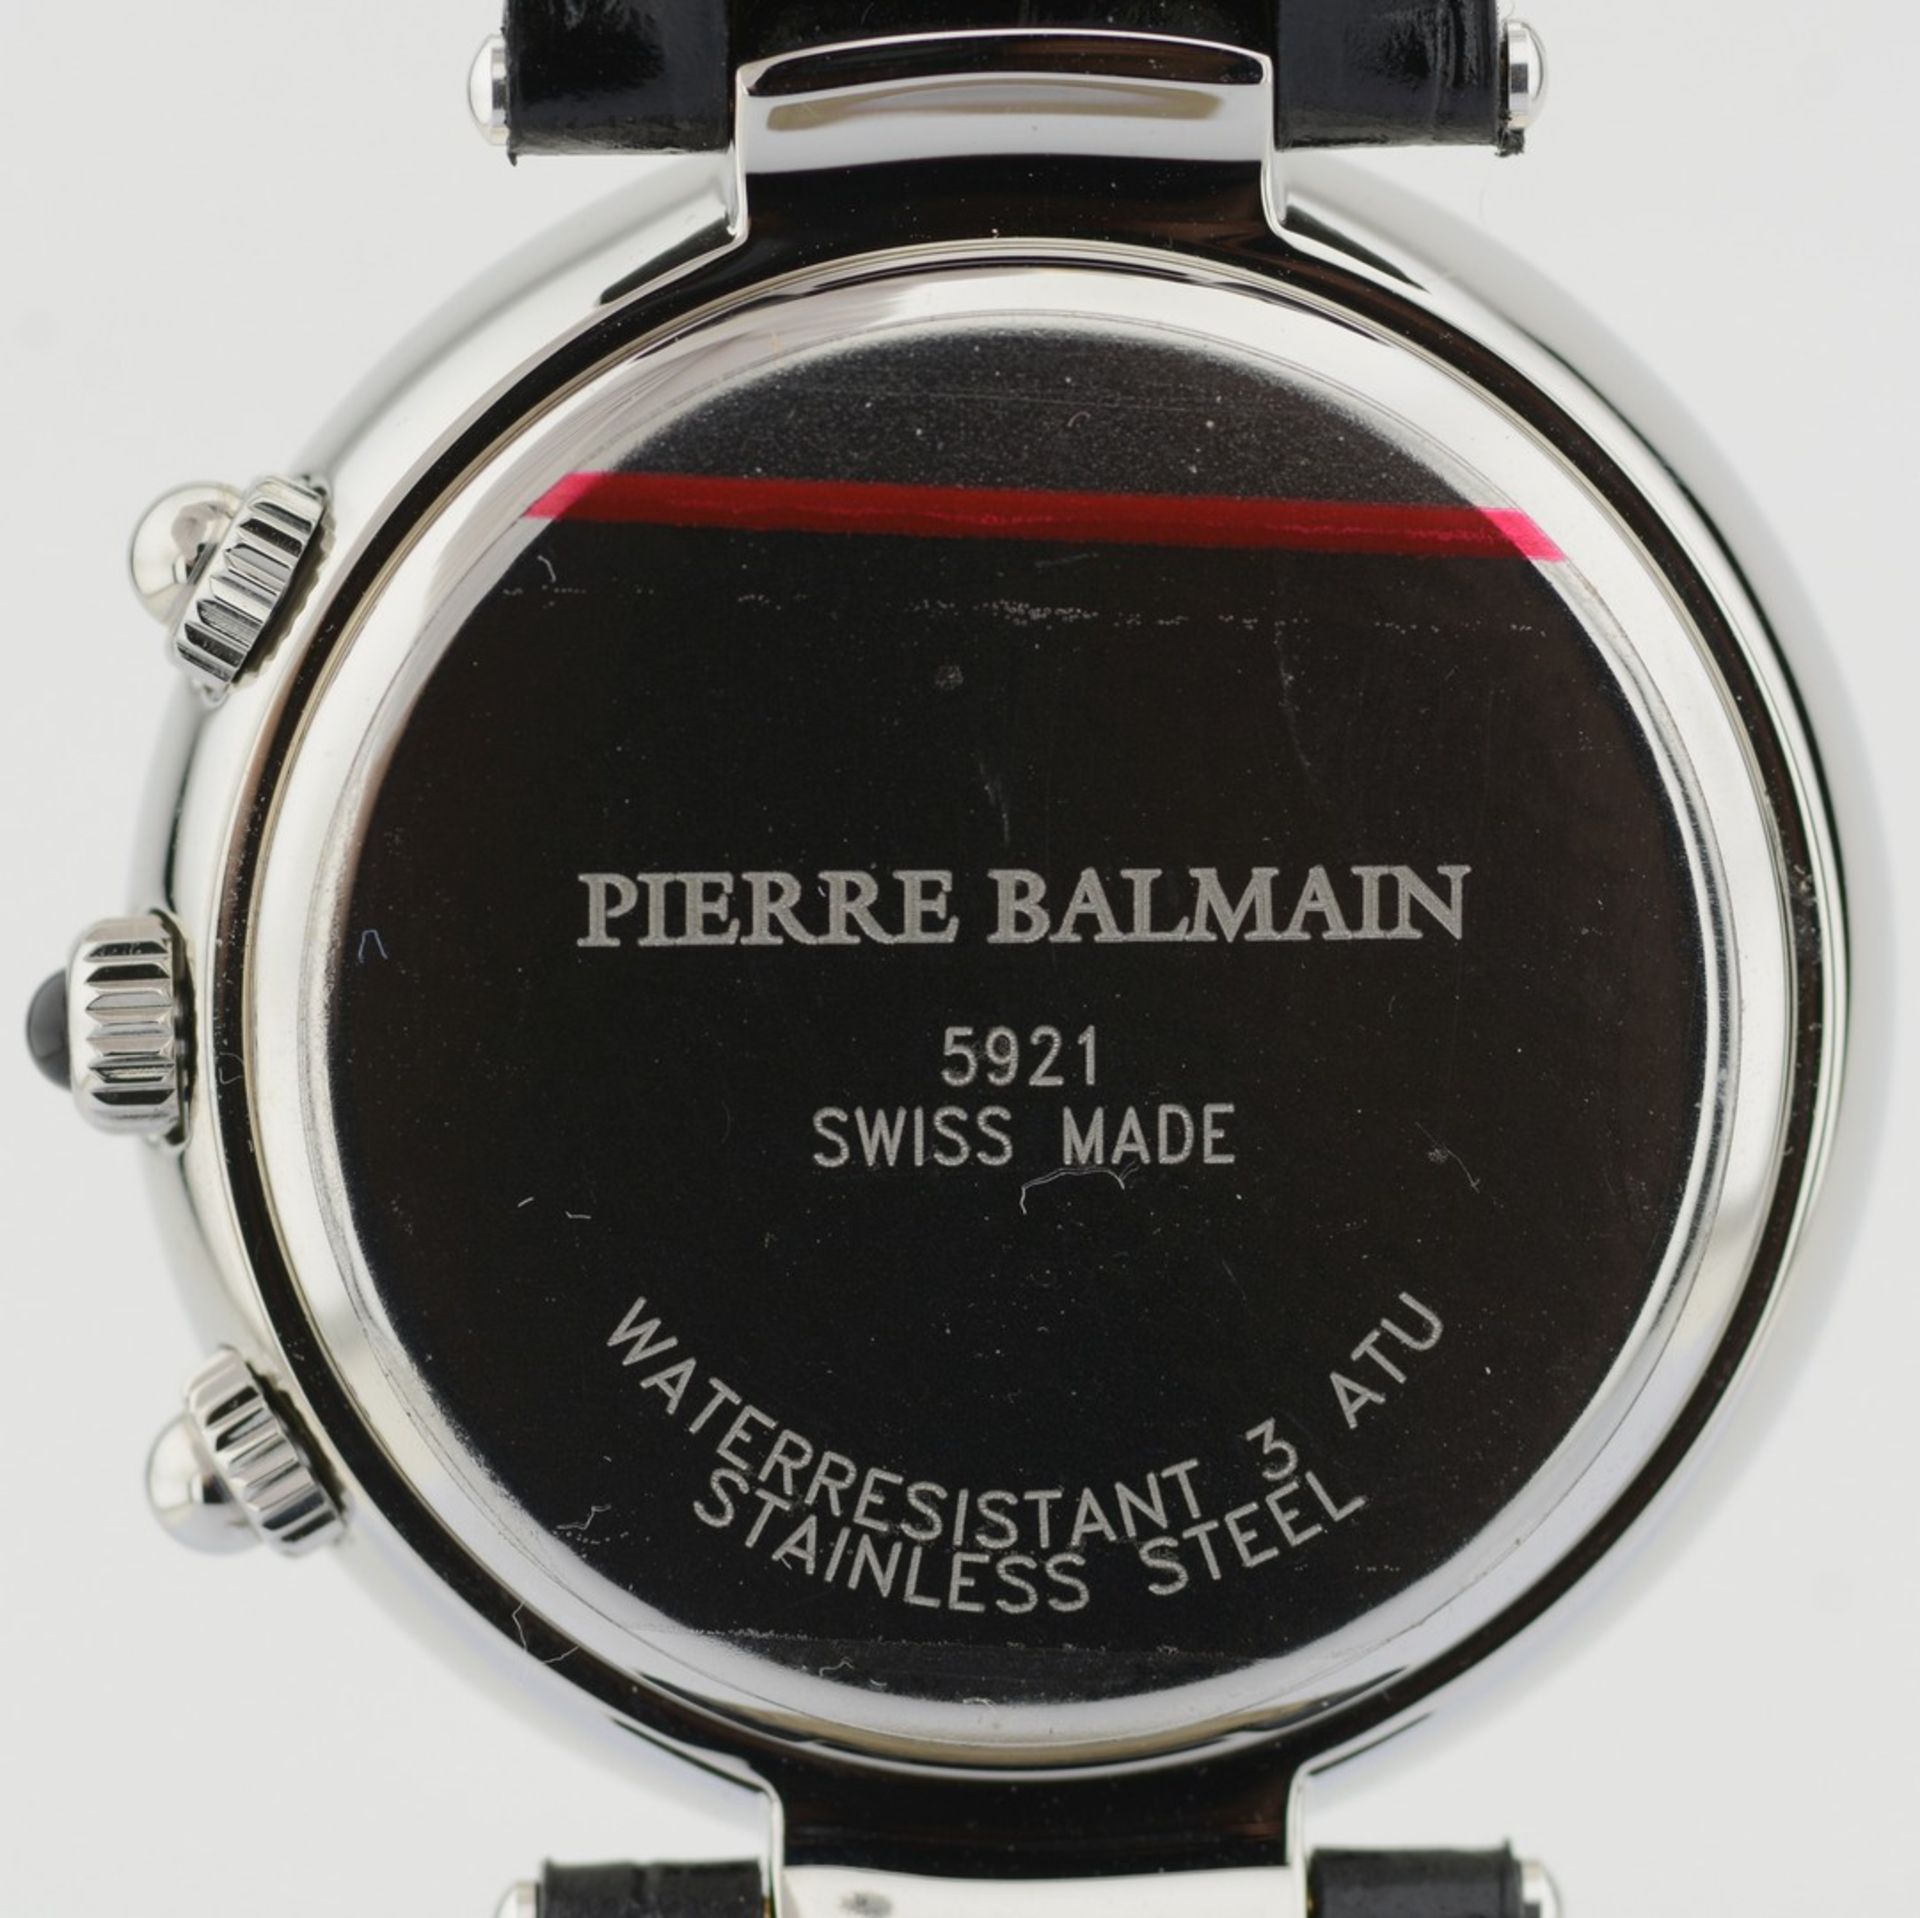 Pierre Balmain / Swiss Chronograph Date - Gentlmen's Steel Wrist Watch - Image 8 of 10